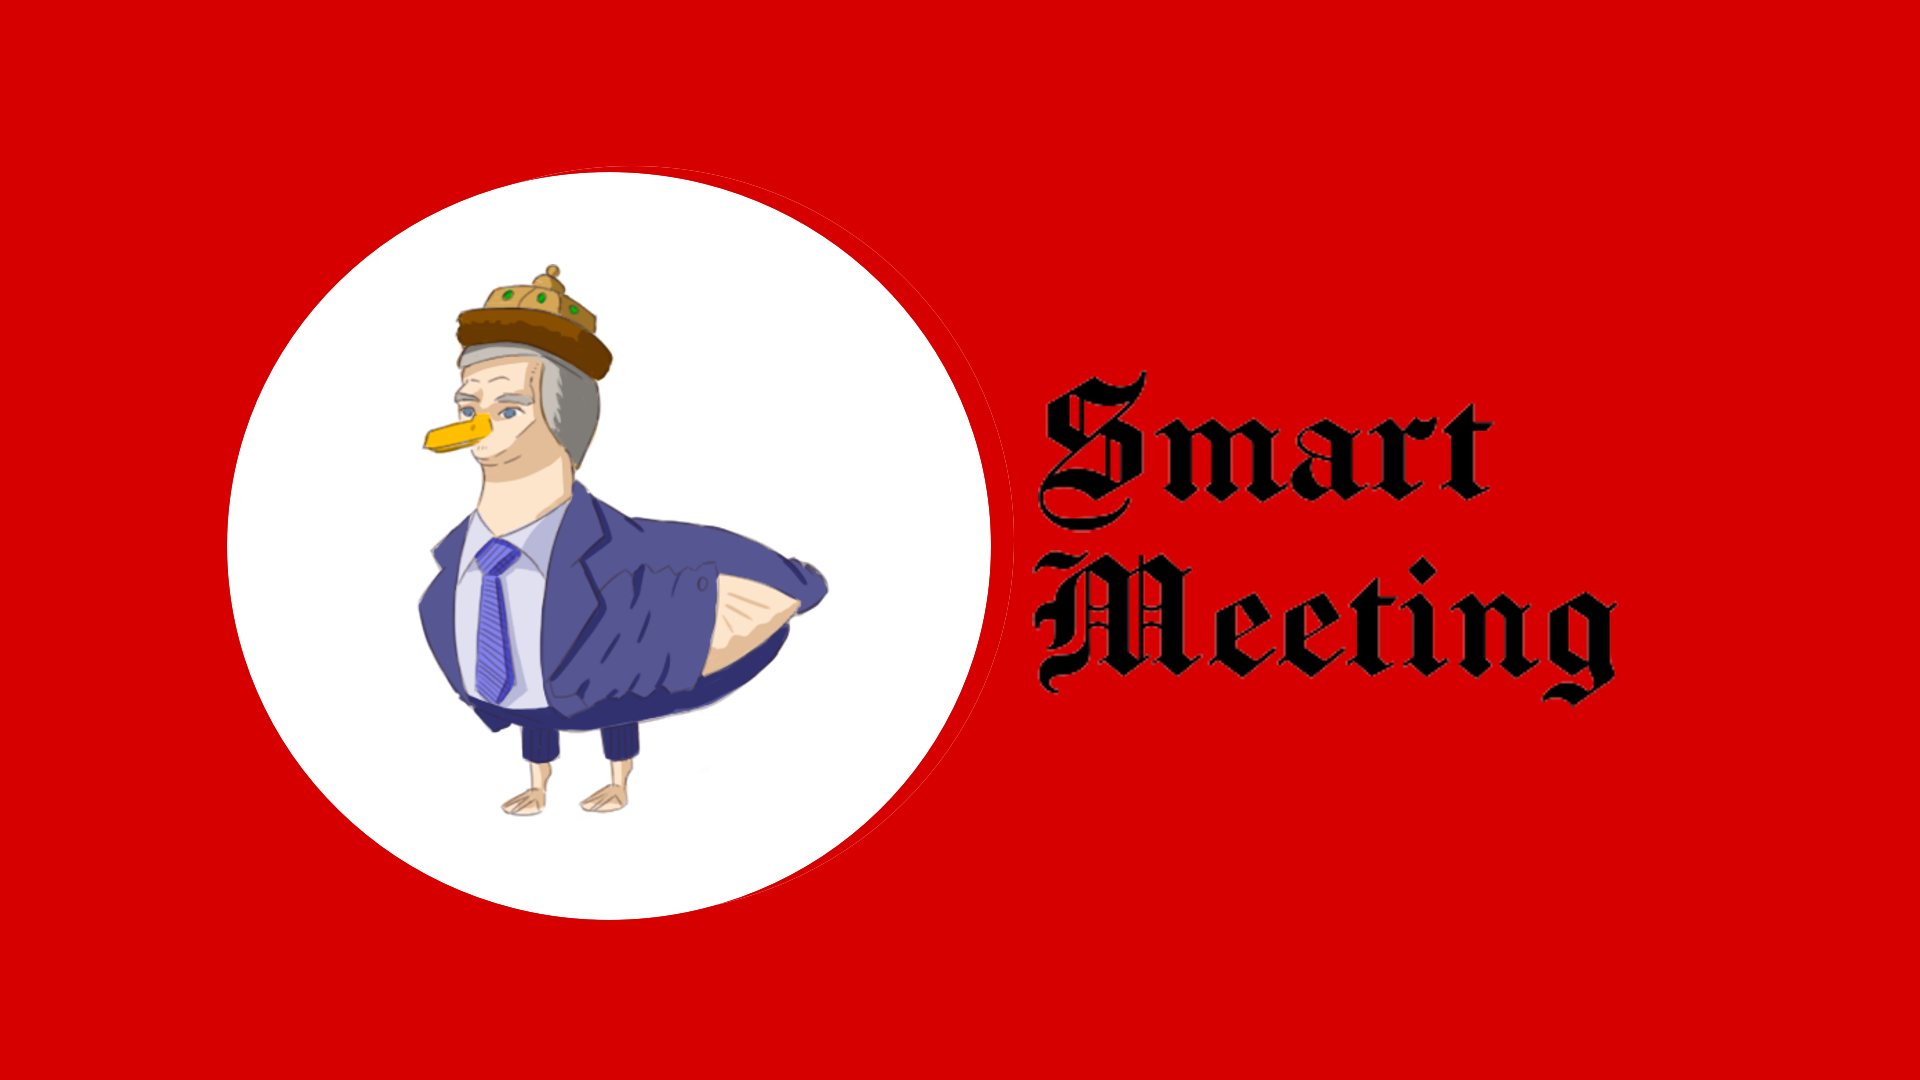 Smart meeting